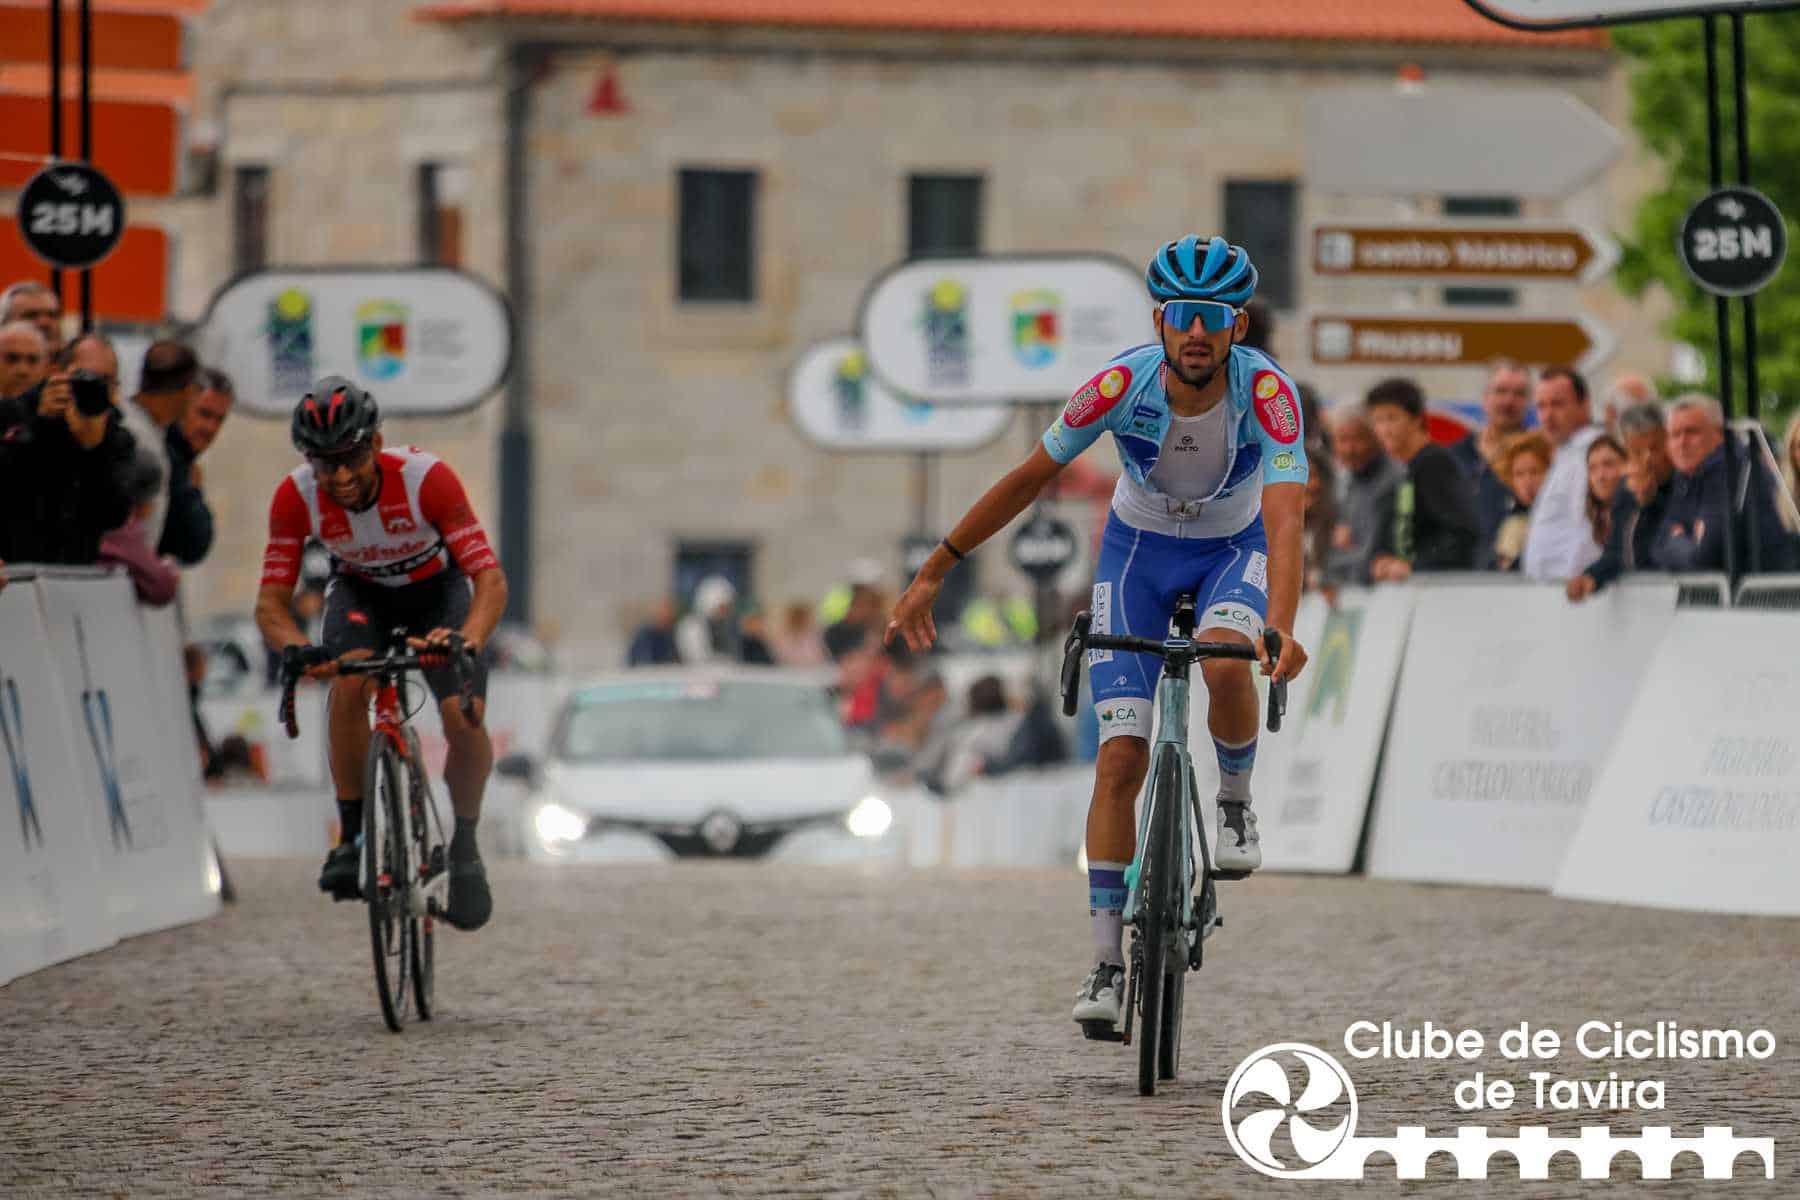 Clube de Ciclismo de Tavira - Grande Prémio Internacional Beiras e Serra da Estrela 202325